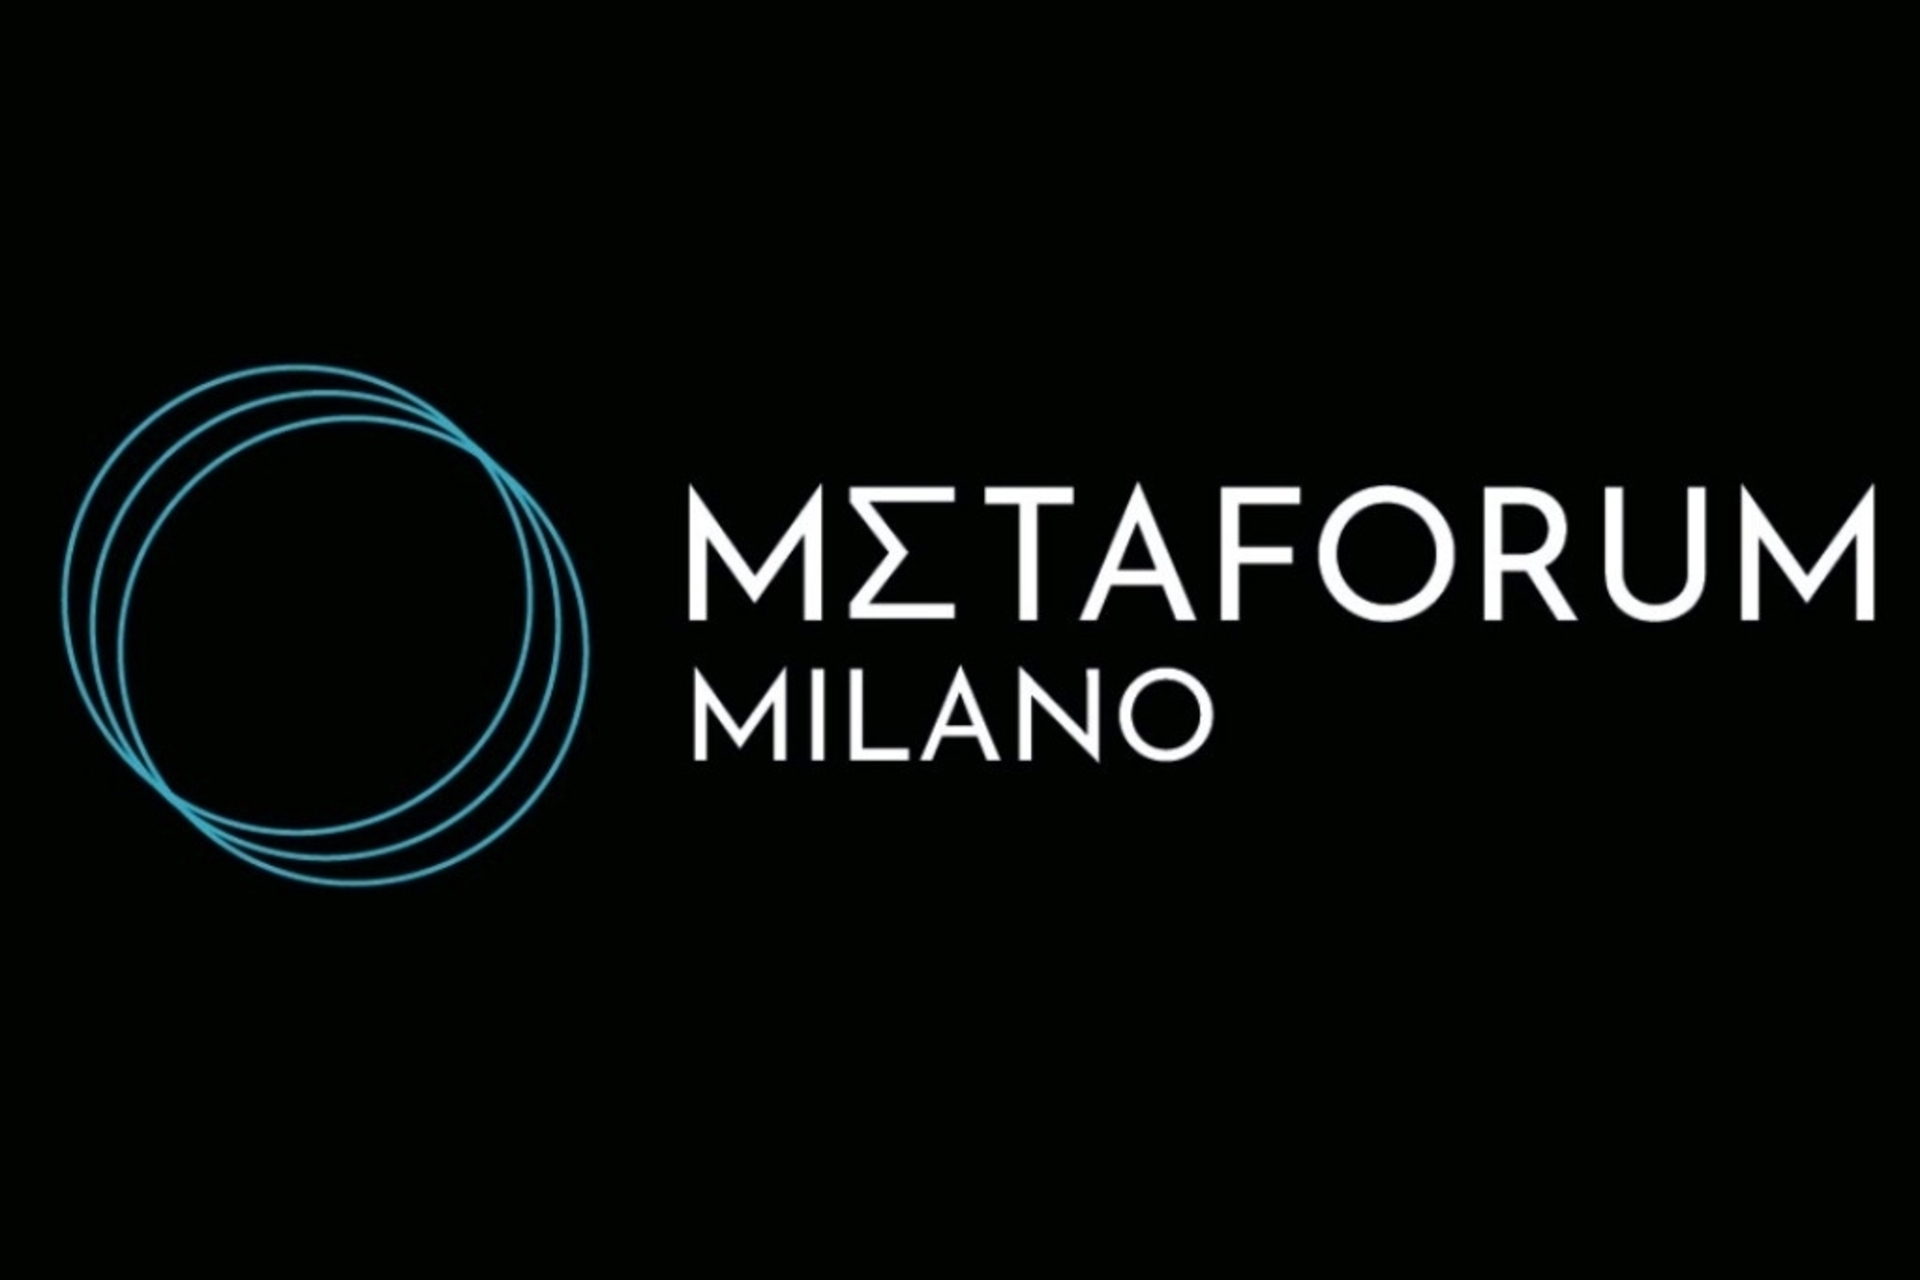 Metaforum: het logo van Metaforum Milano